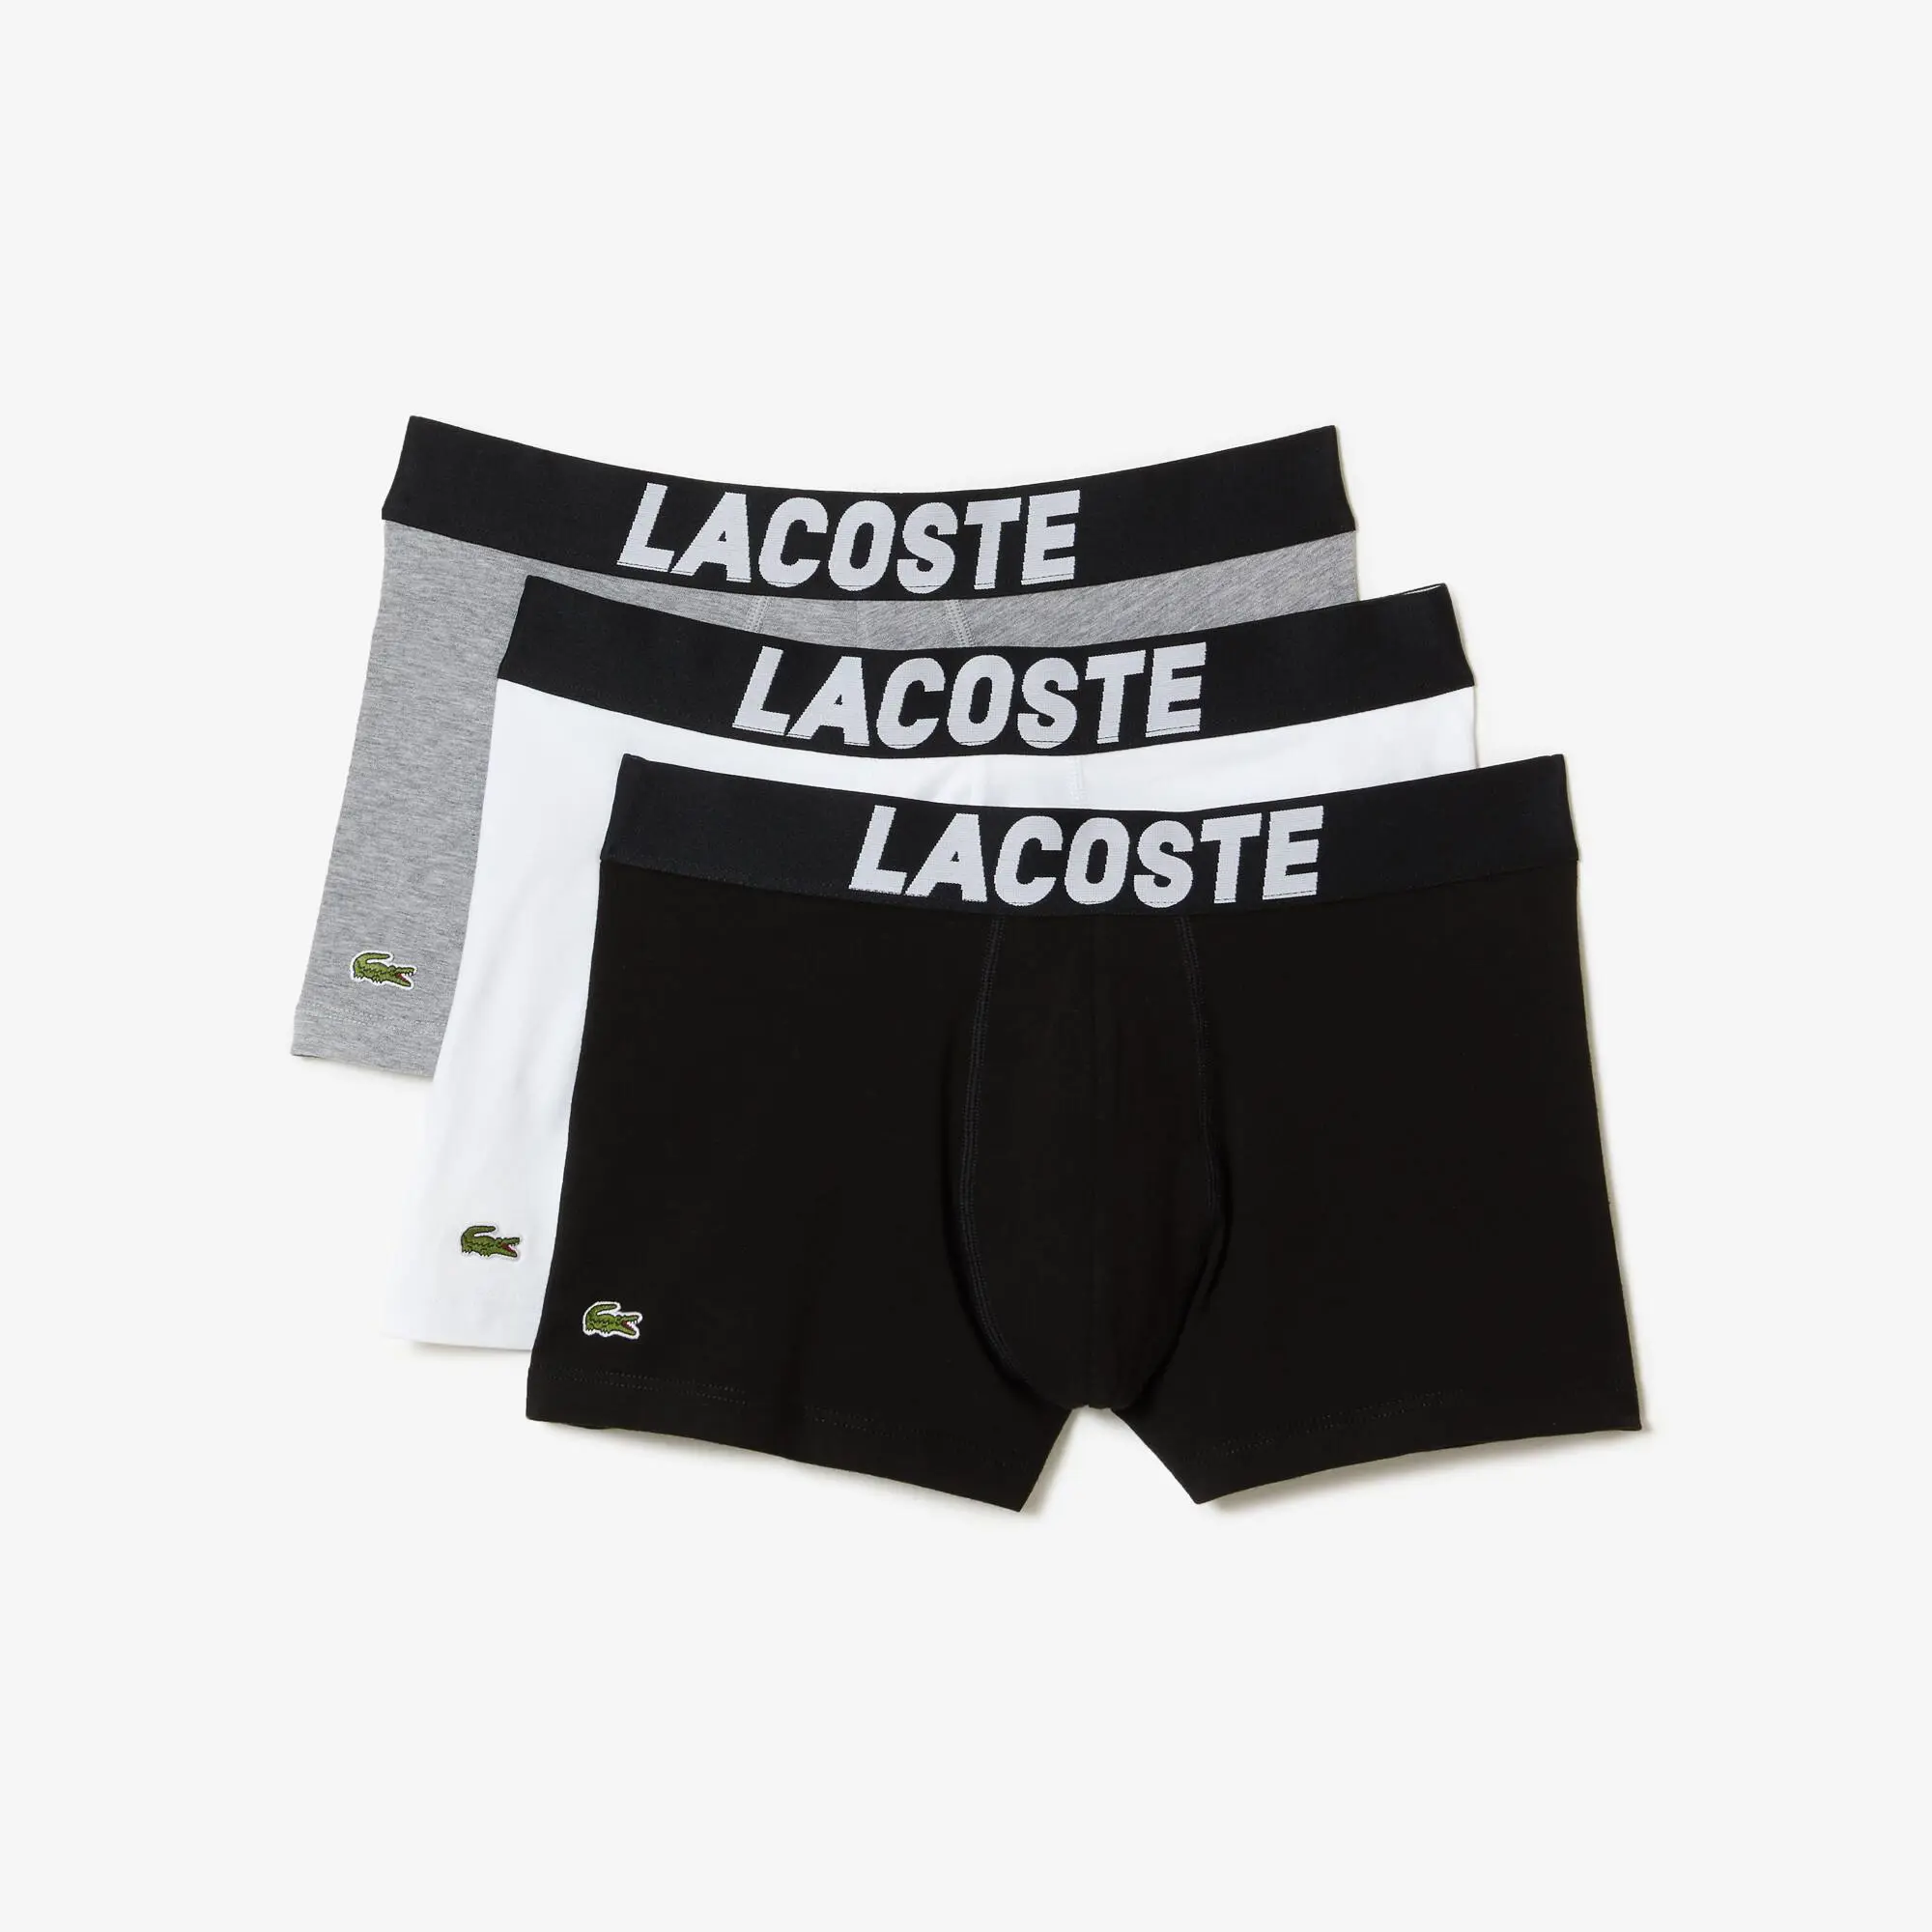 Lacoste Pack de tres calzoncillos de hombre Lacoste en tejido de punto con detalle de la marca. 2